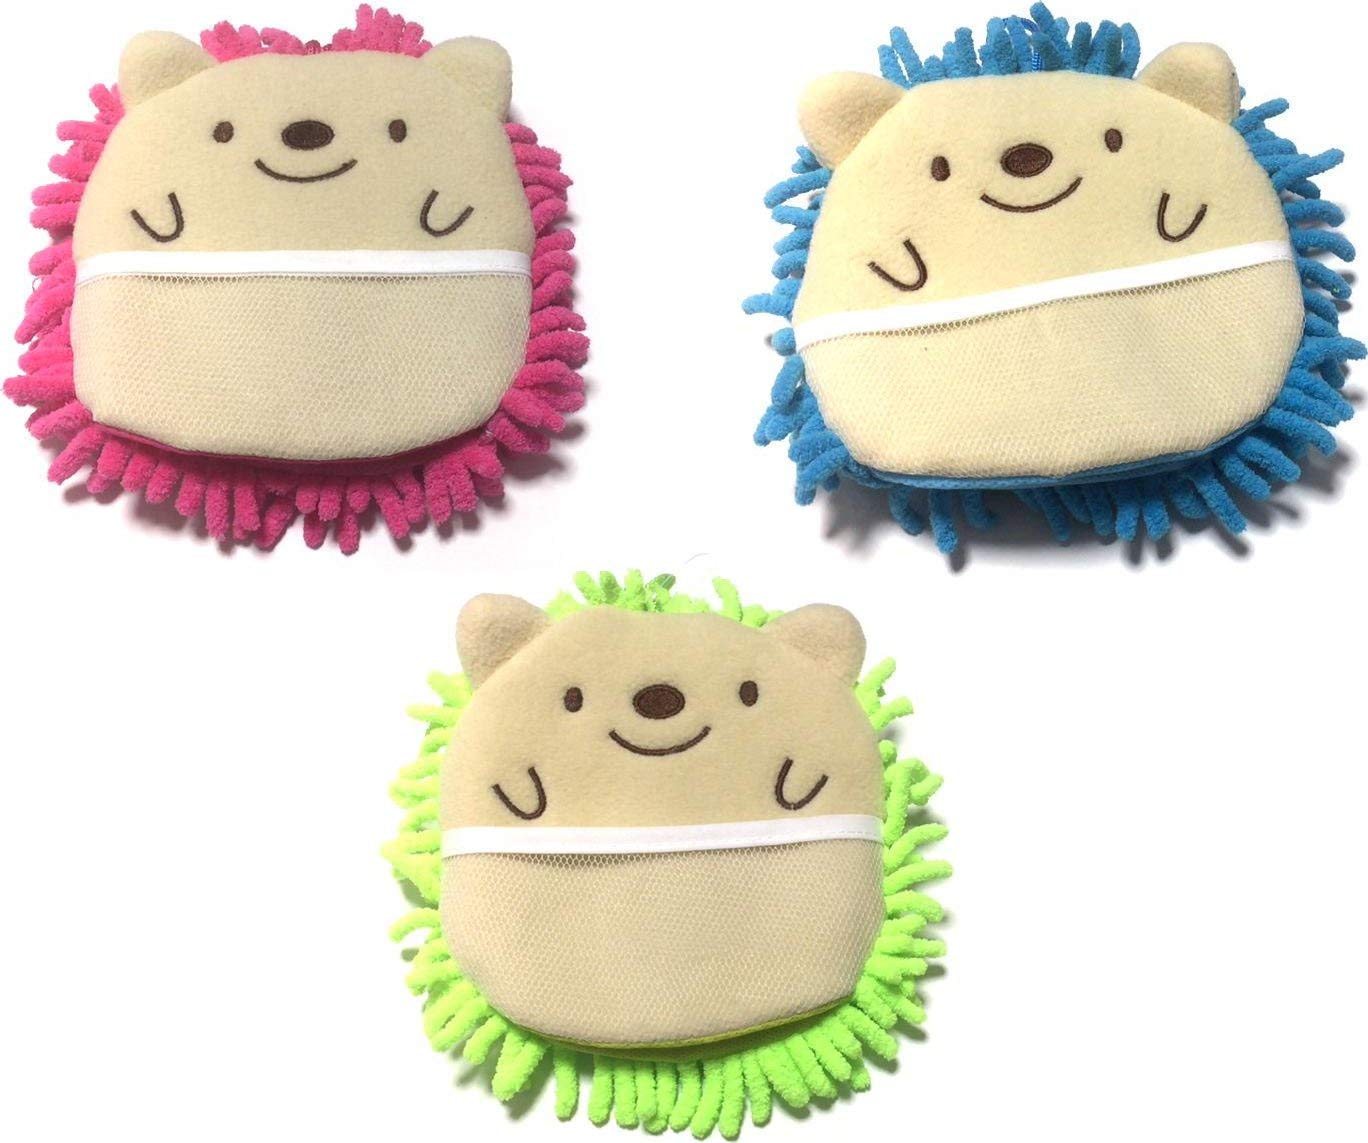  Microfiber Mitten Cute Hedgehog 6 1/2 x 6 1/2 Pink Green Blue